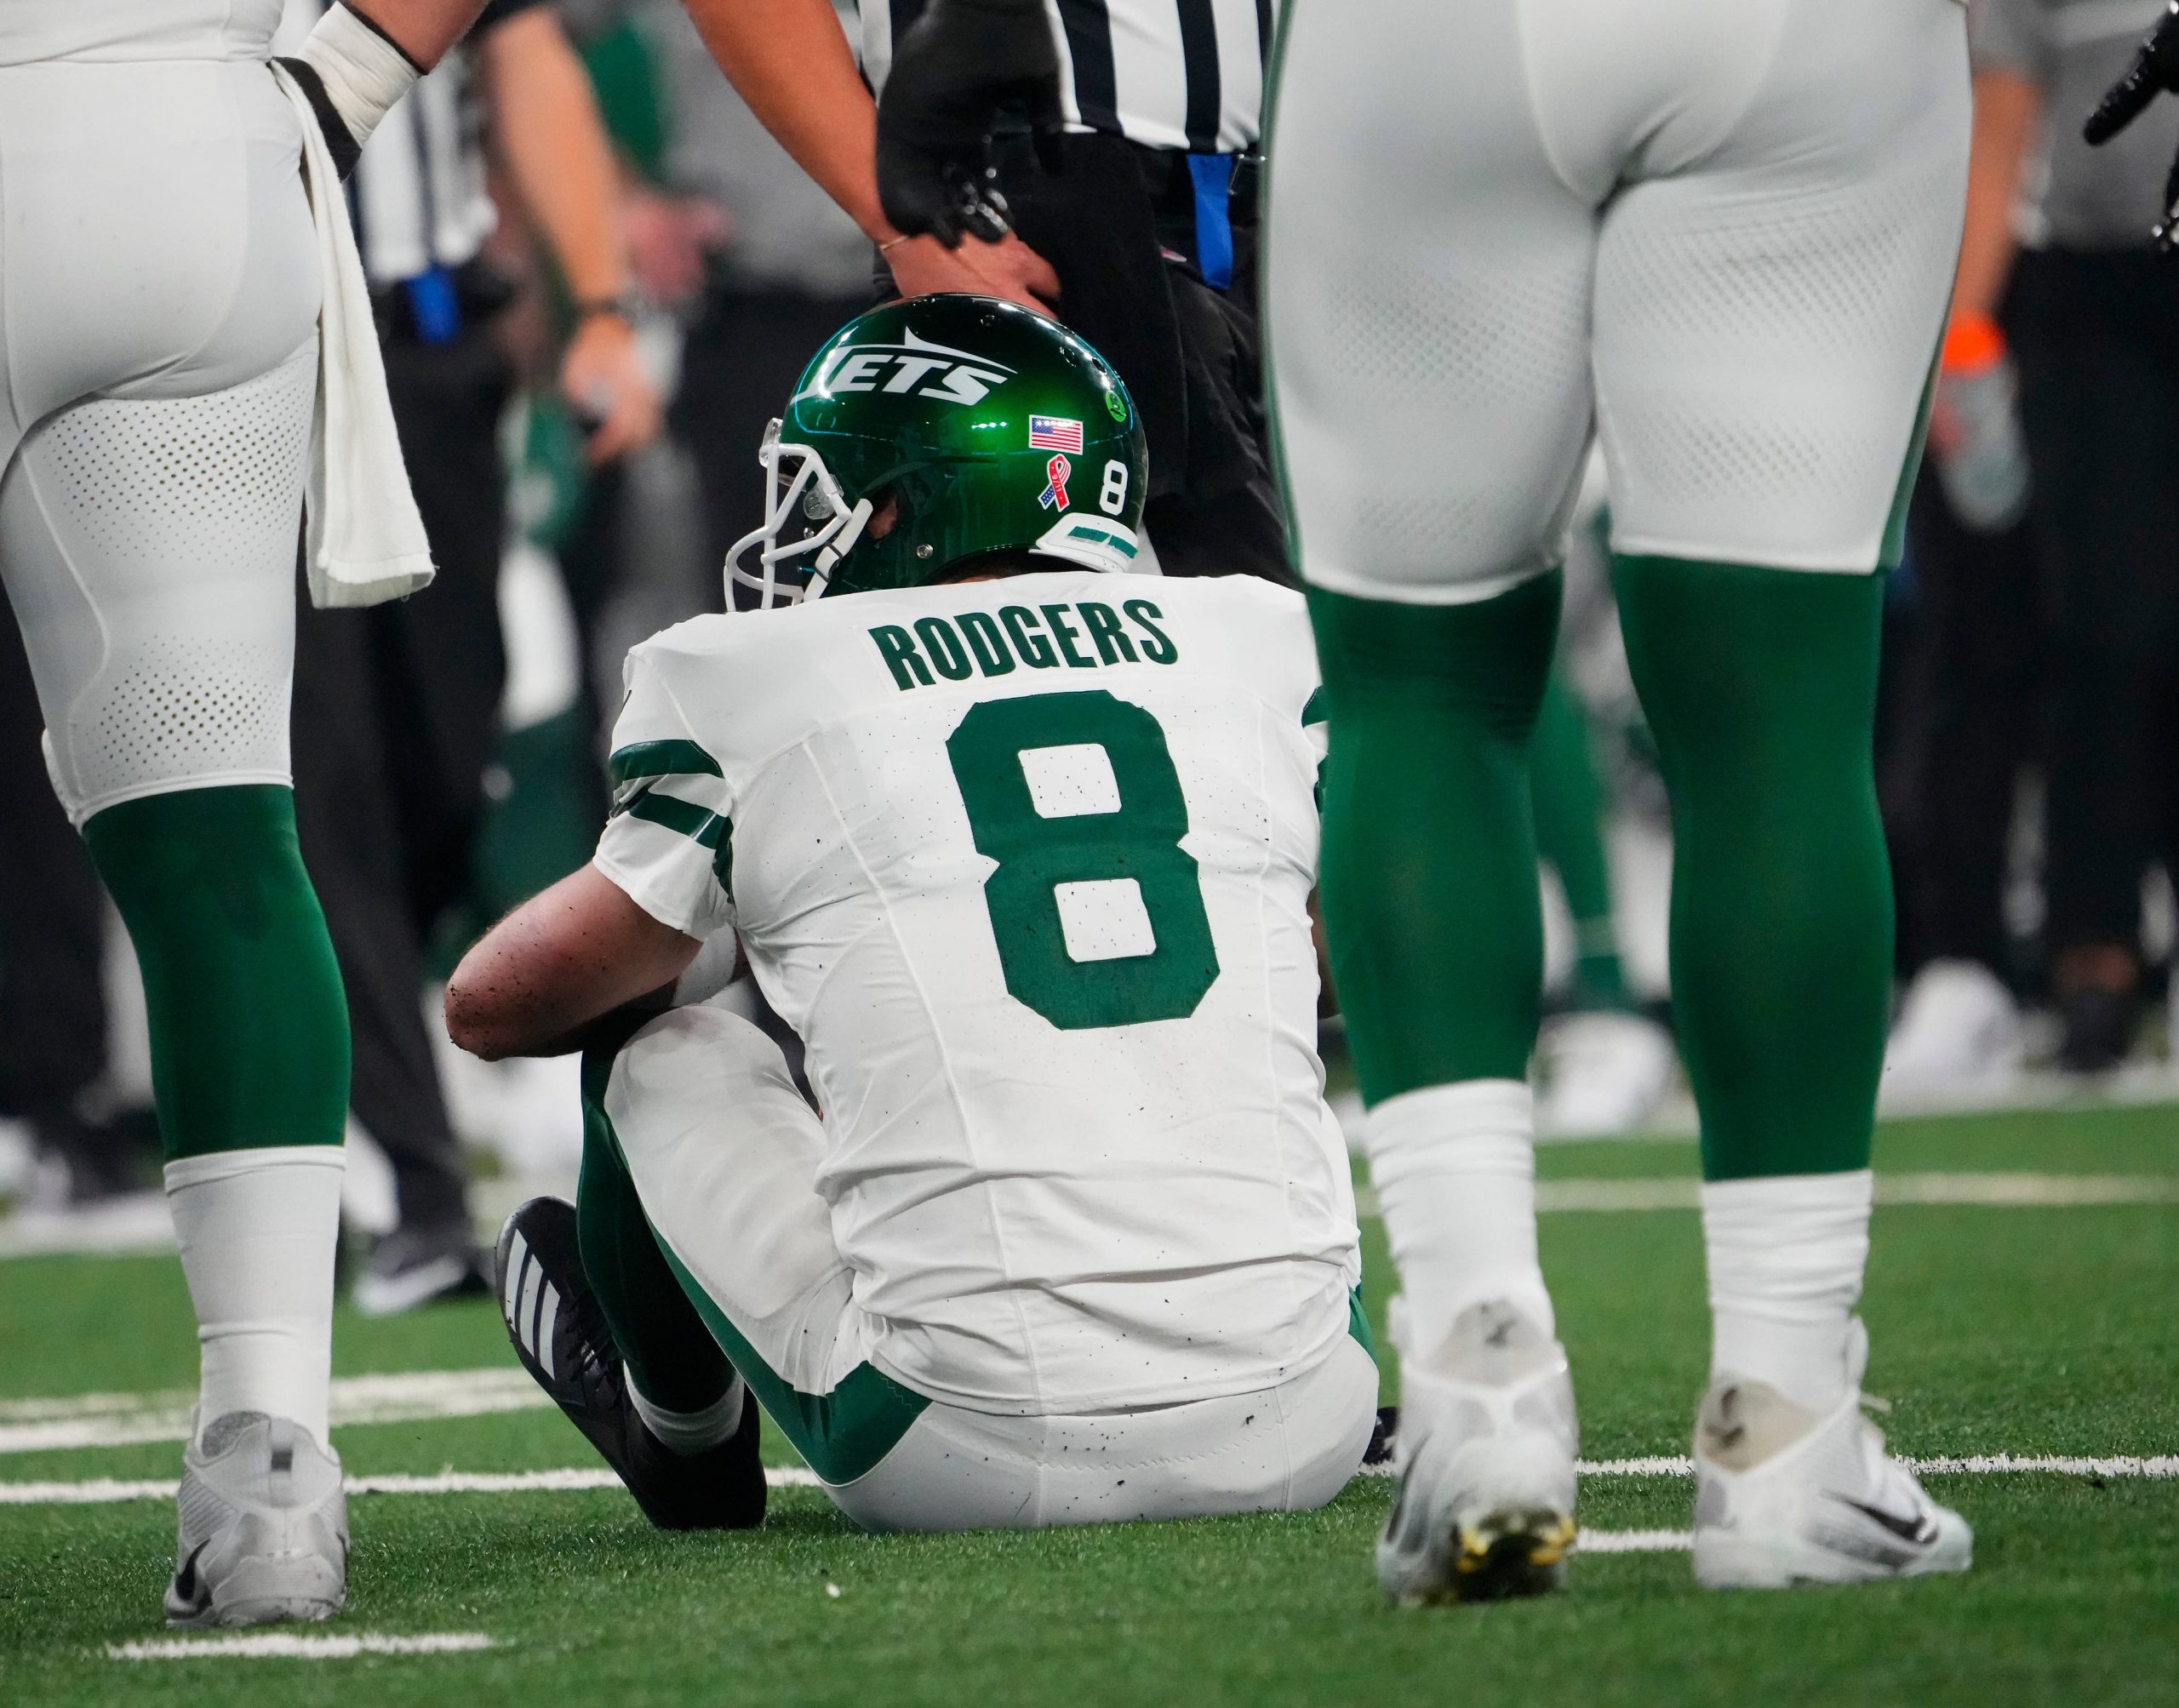 FootballR - NFL - Ein Footballspieler, Aaron Rodgers, sitzt verletzt am Boden draußen.